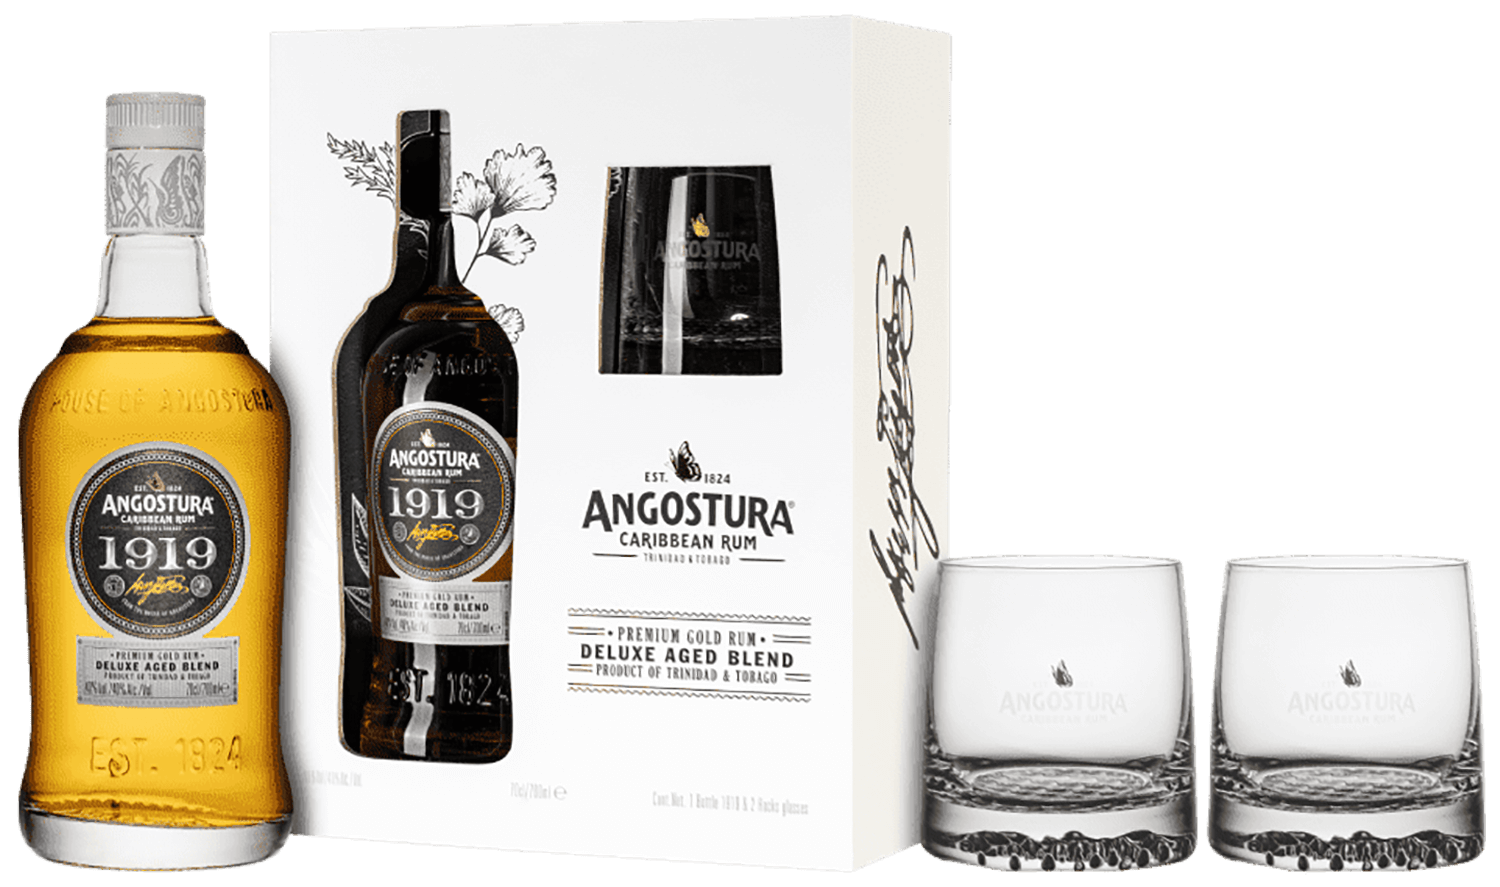 Angostura 1919 (gift box with 2 glasses) casa vieja anejo extra aged gift box with 2 glasses